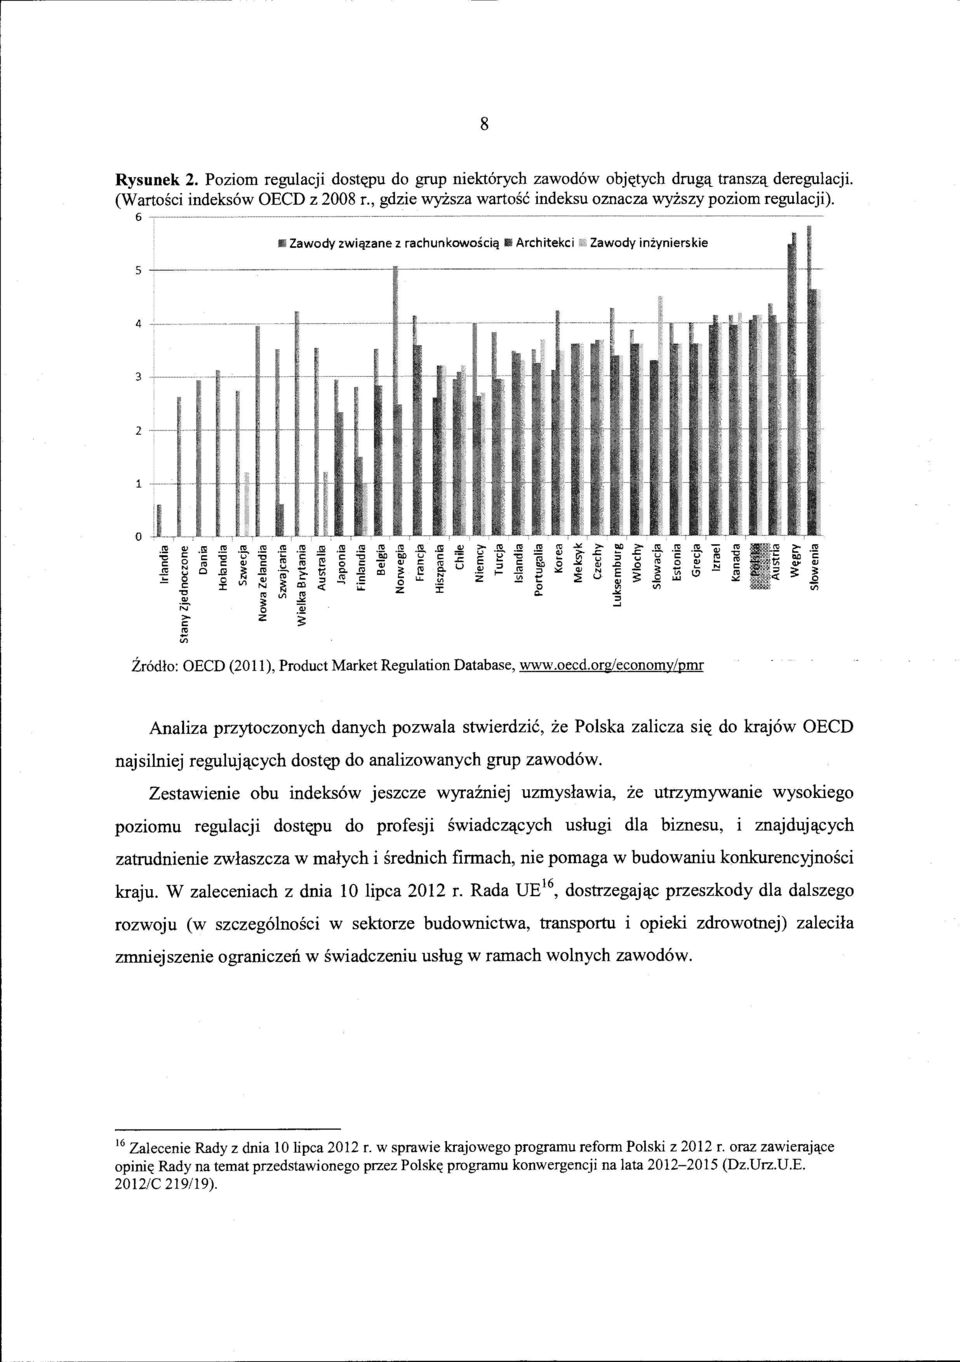 oecd.org/economy/pmr Analiza przytoczonych danych pozwala stwierdzic, ze Polska zalicza si(( do kraj6w OECD najsilniej reguluj~cych dost'(p do analizowanych grup zawod6w.